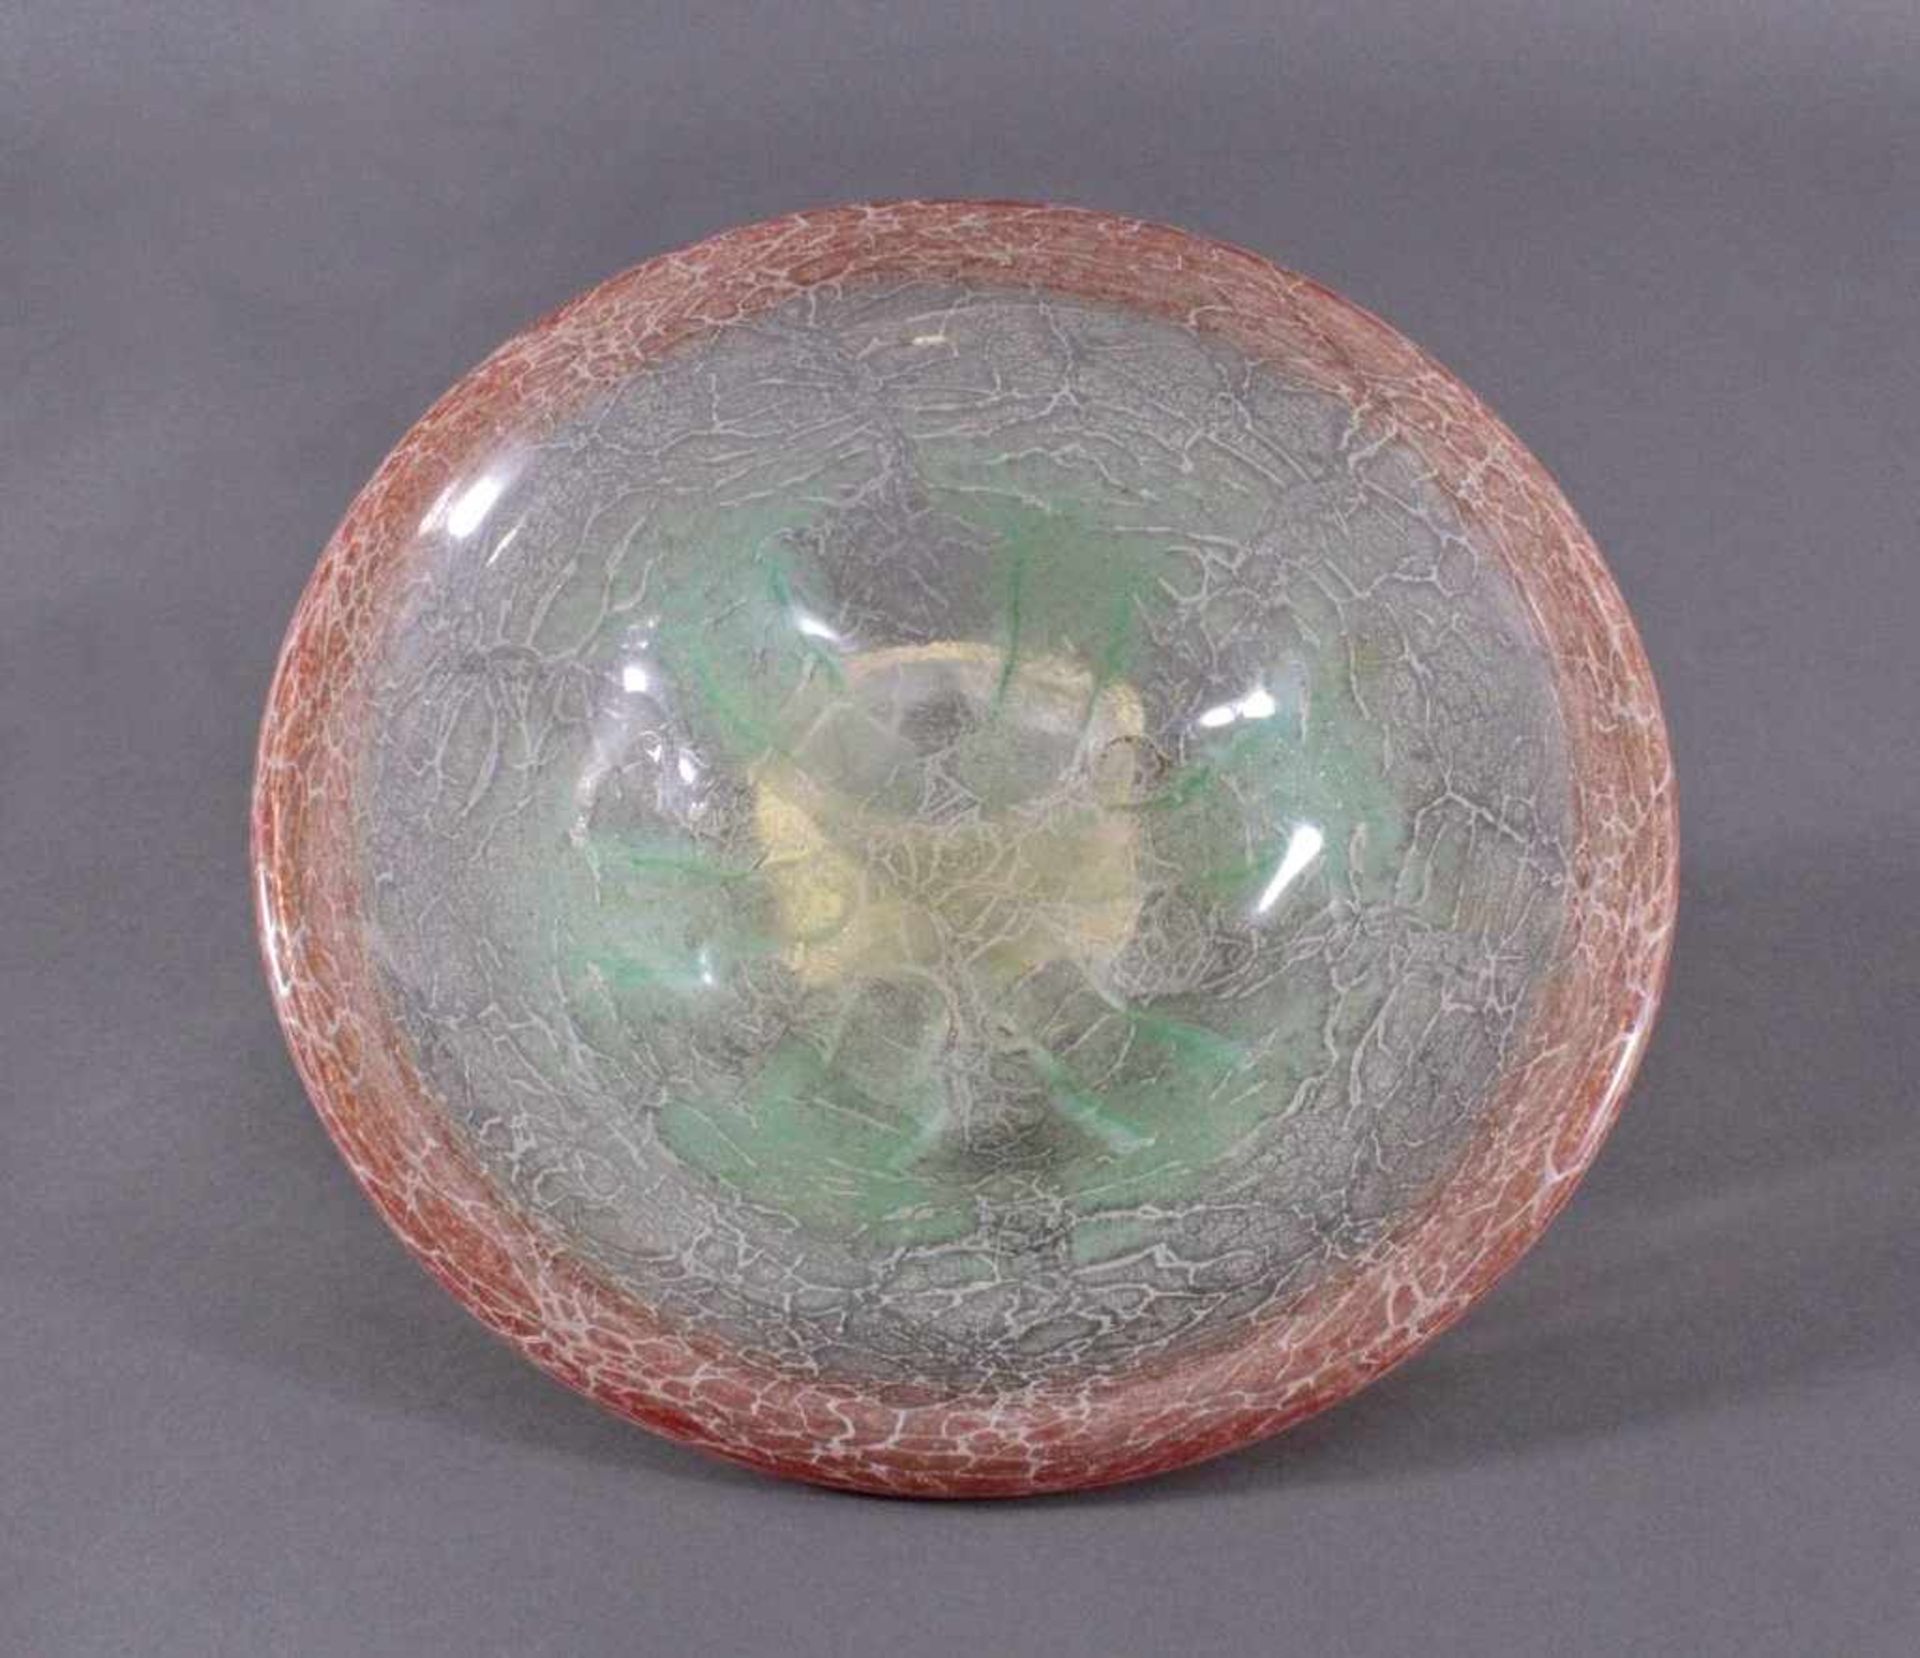 WMF-Ikora-Schale, 1930er JahreFarbloses Glass mit hellrot und grüne Einschmelzungen, ca.H-7 cm, D- - Image 3 of 4